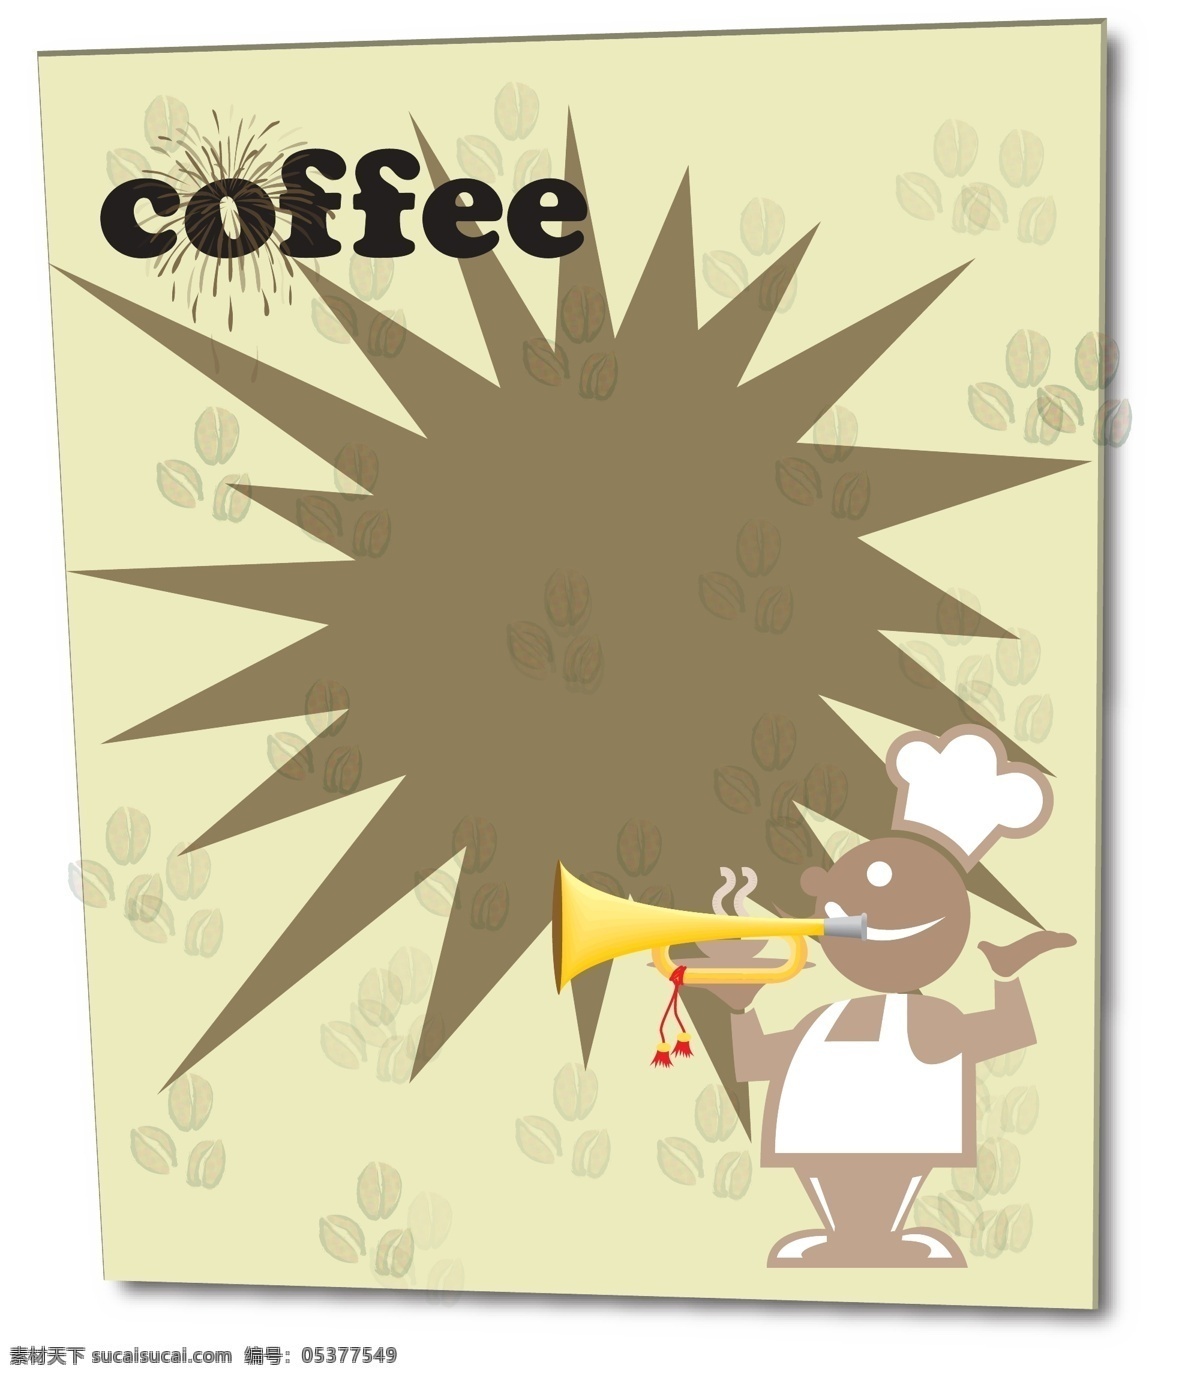 咖啡 海报招贴 咖啡豆 海报 招贴 厨师 烟花 广告 招贴设计 宣传单 喇叭 dm 矢量